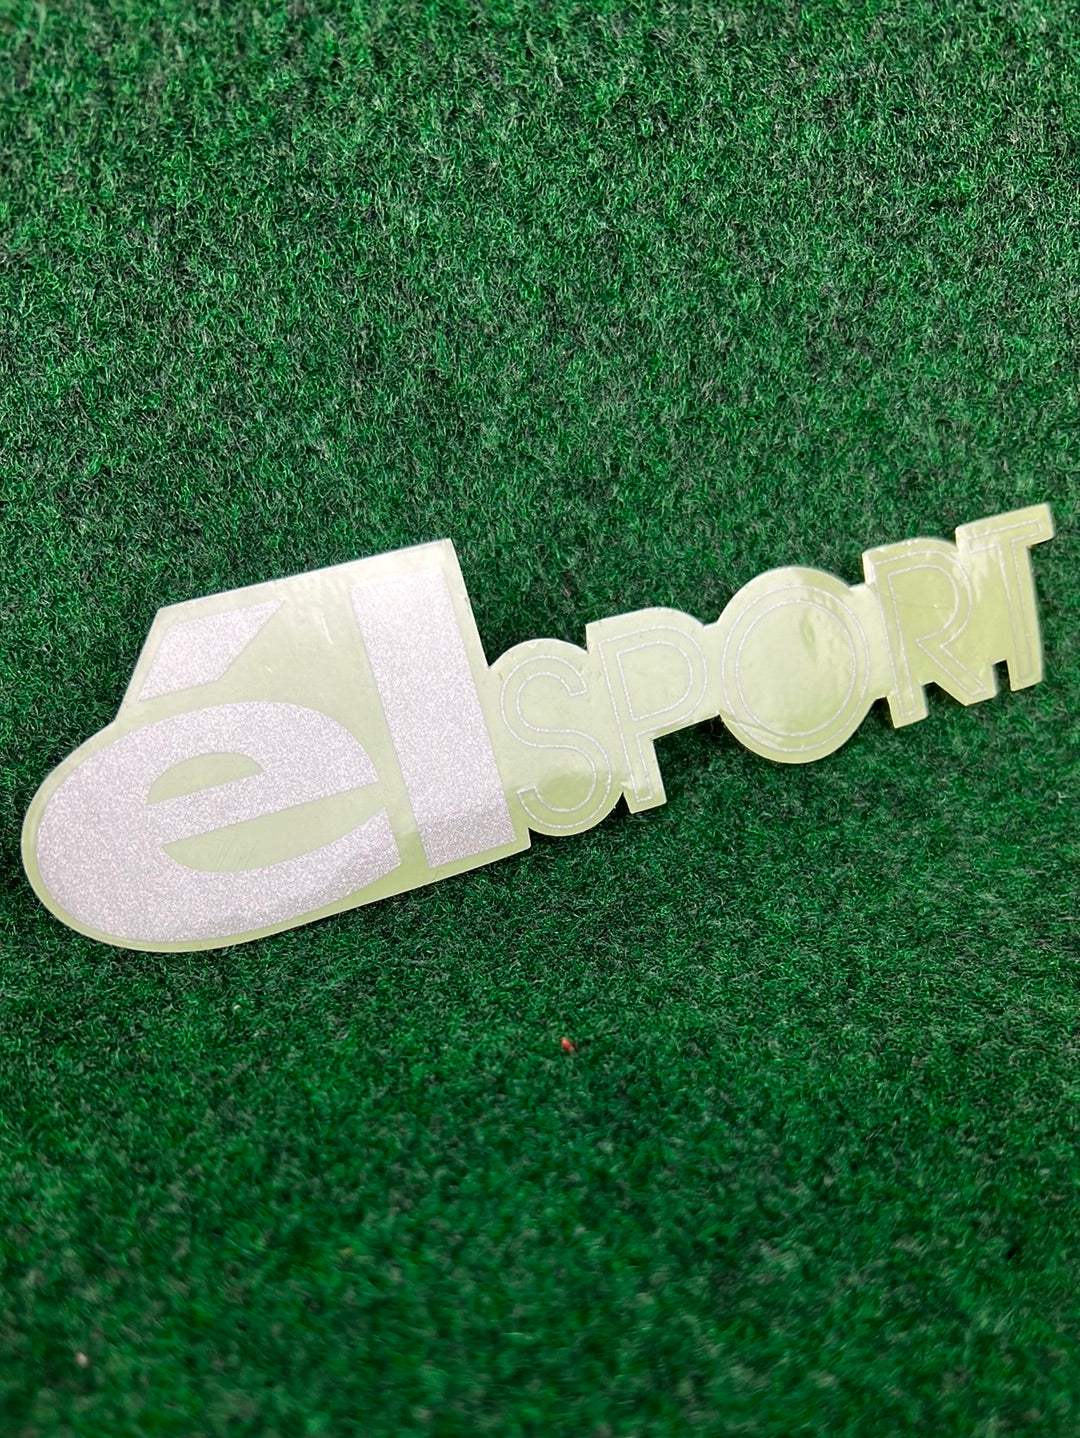 élSPORT - Sticker Set of 5